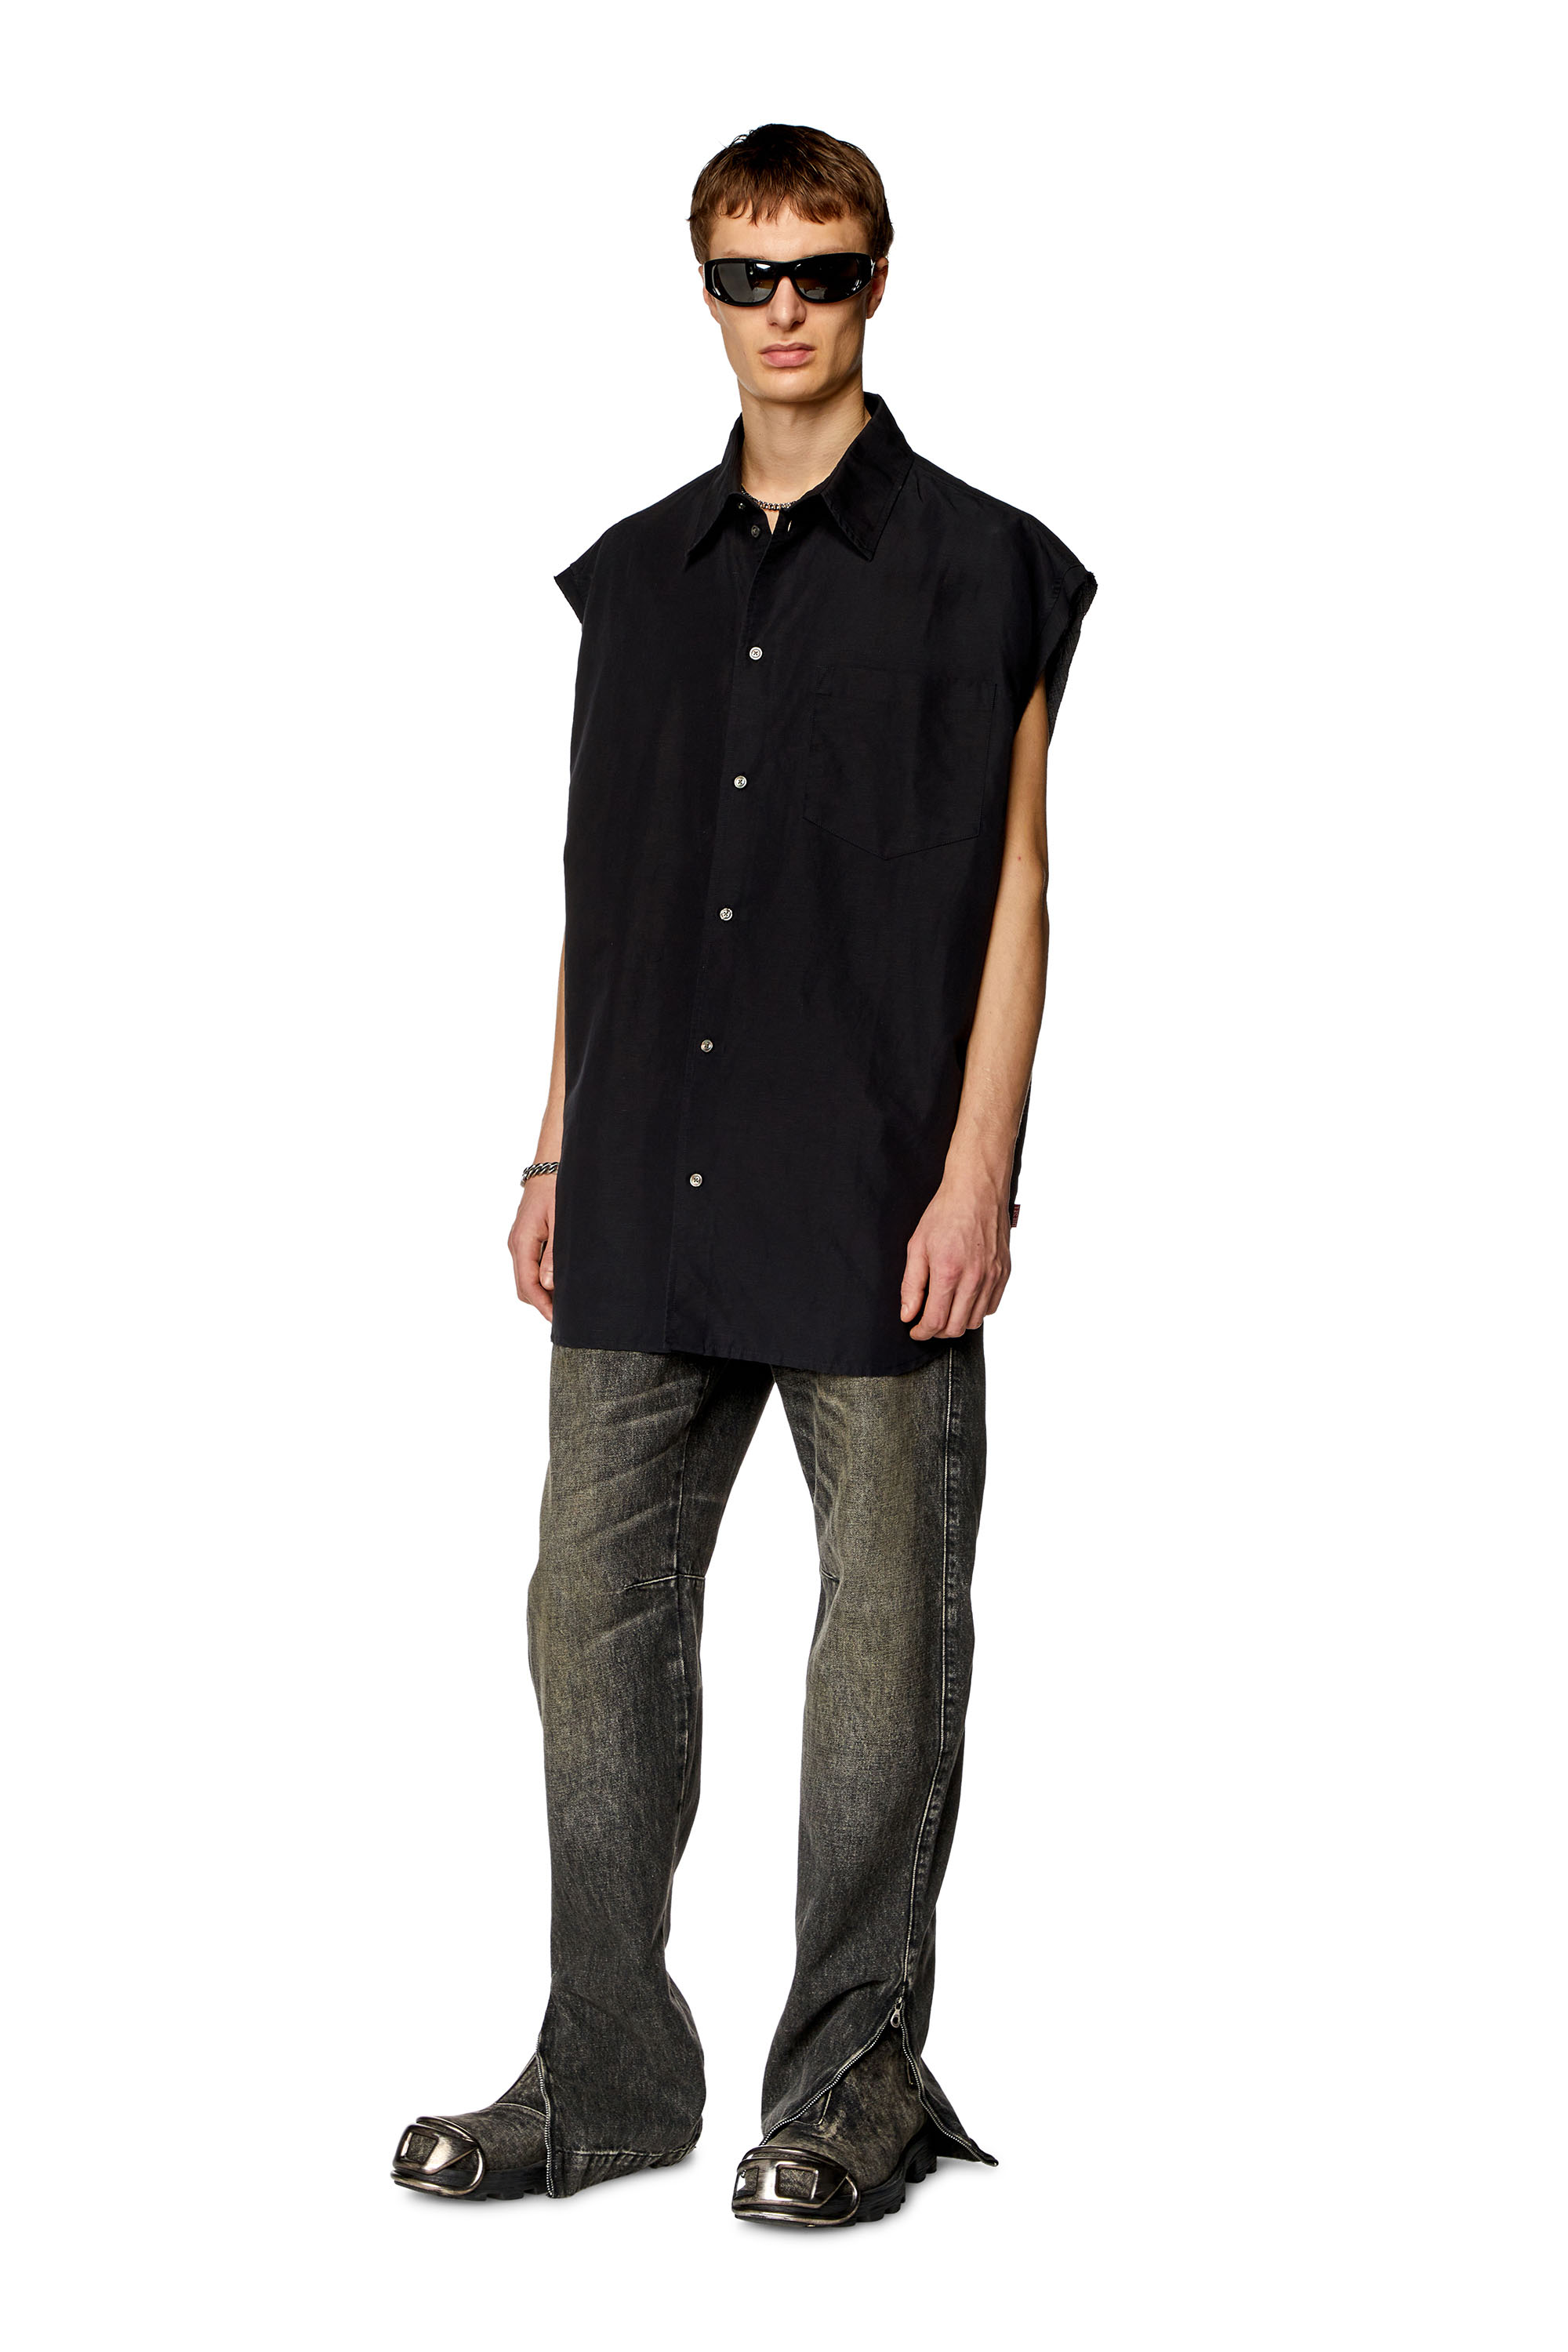 Diesel - S-SIMENS, Man Sleeveless shirt in linen blend in Black - Image 2